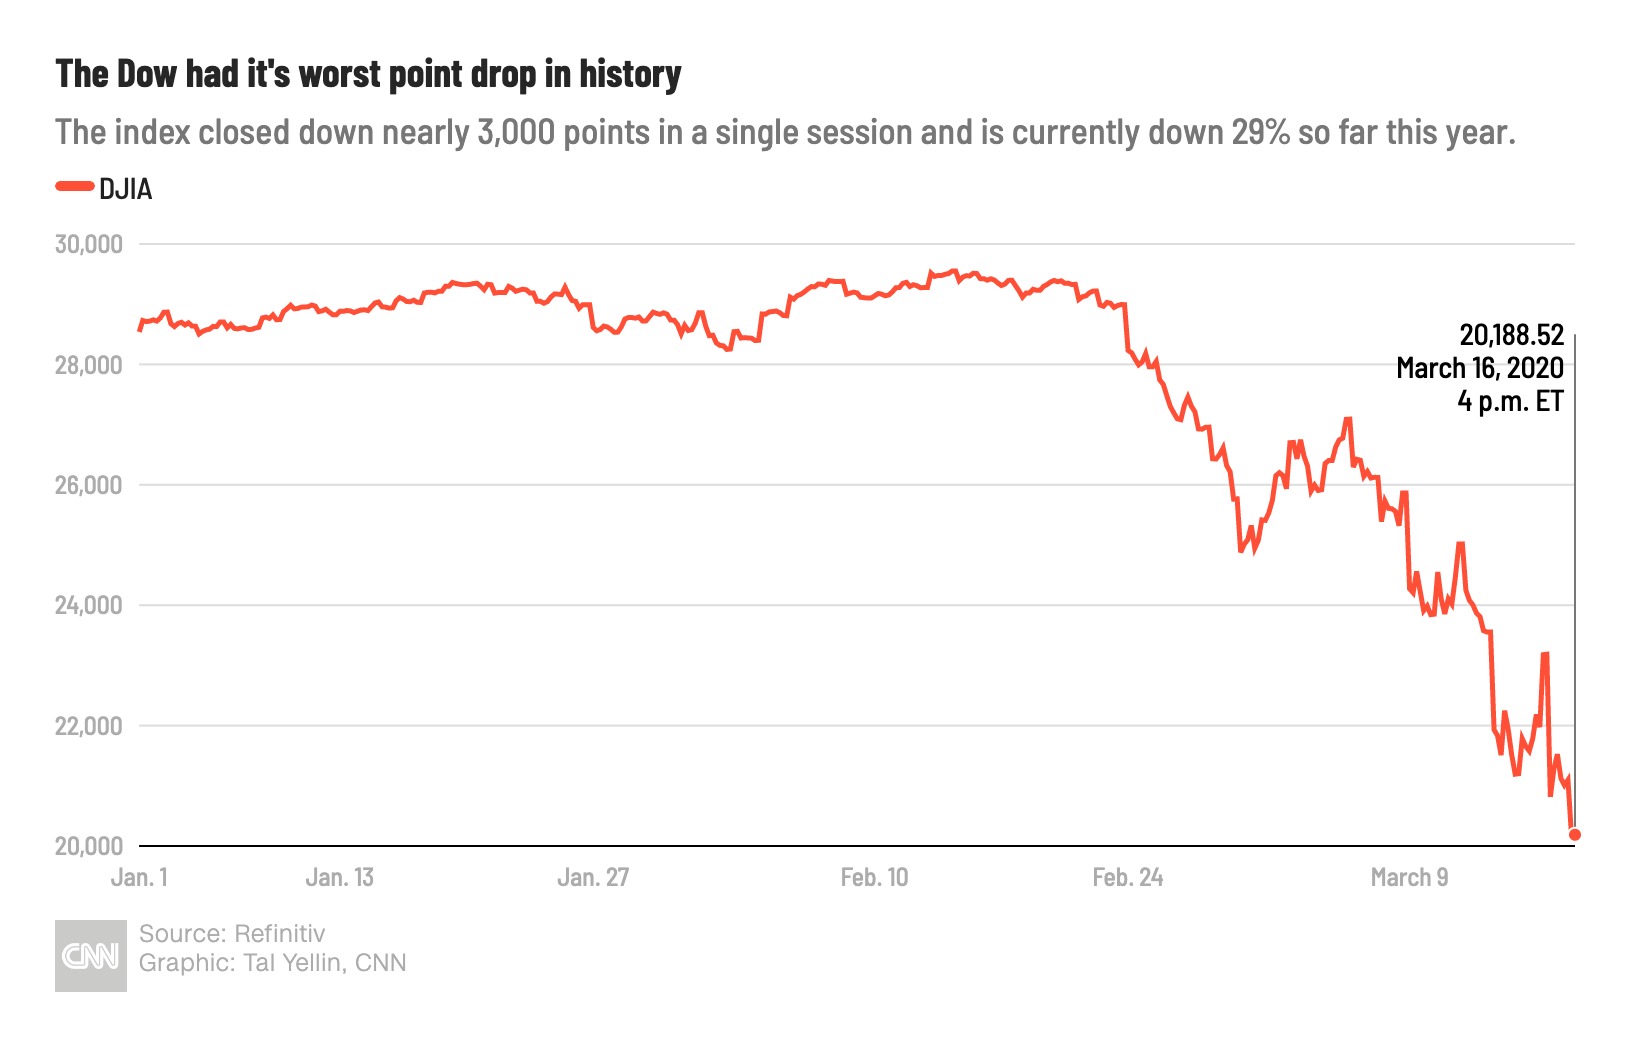 Dow падает почти на 3000 пунктов - худшее падение точки в истории